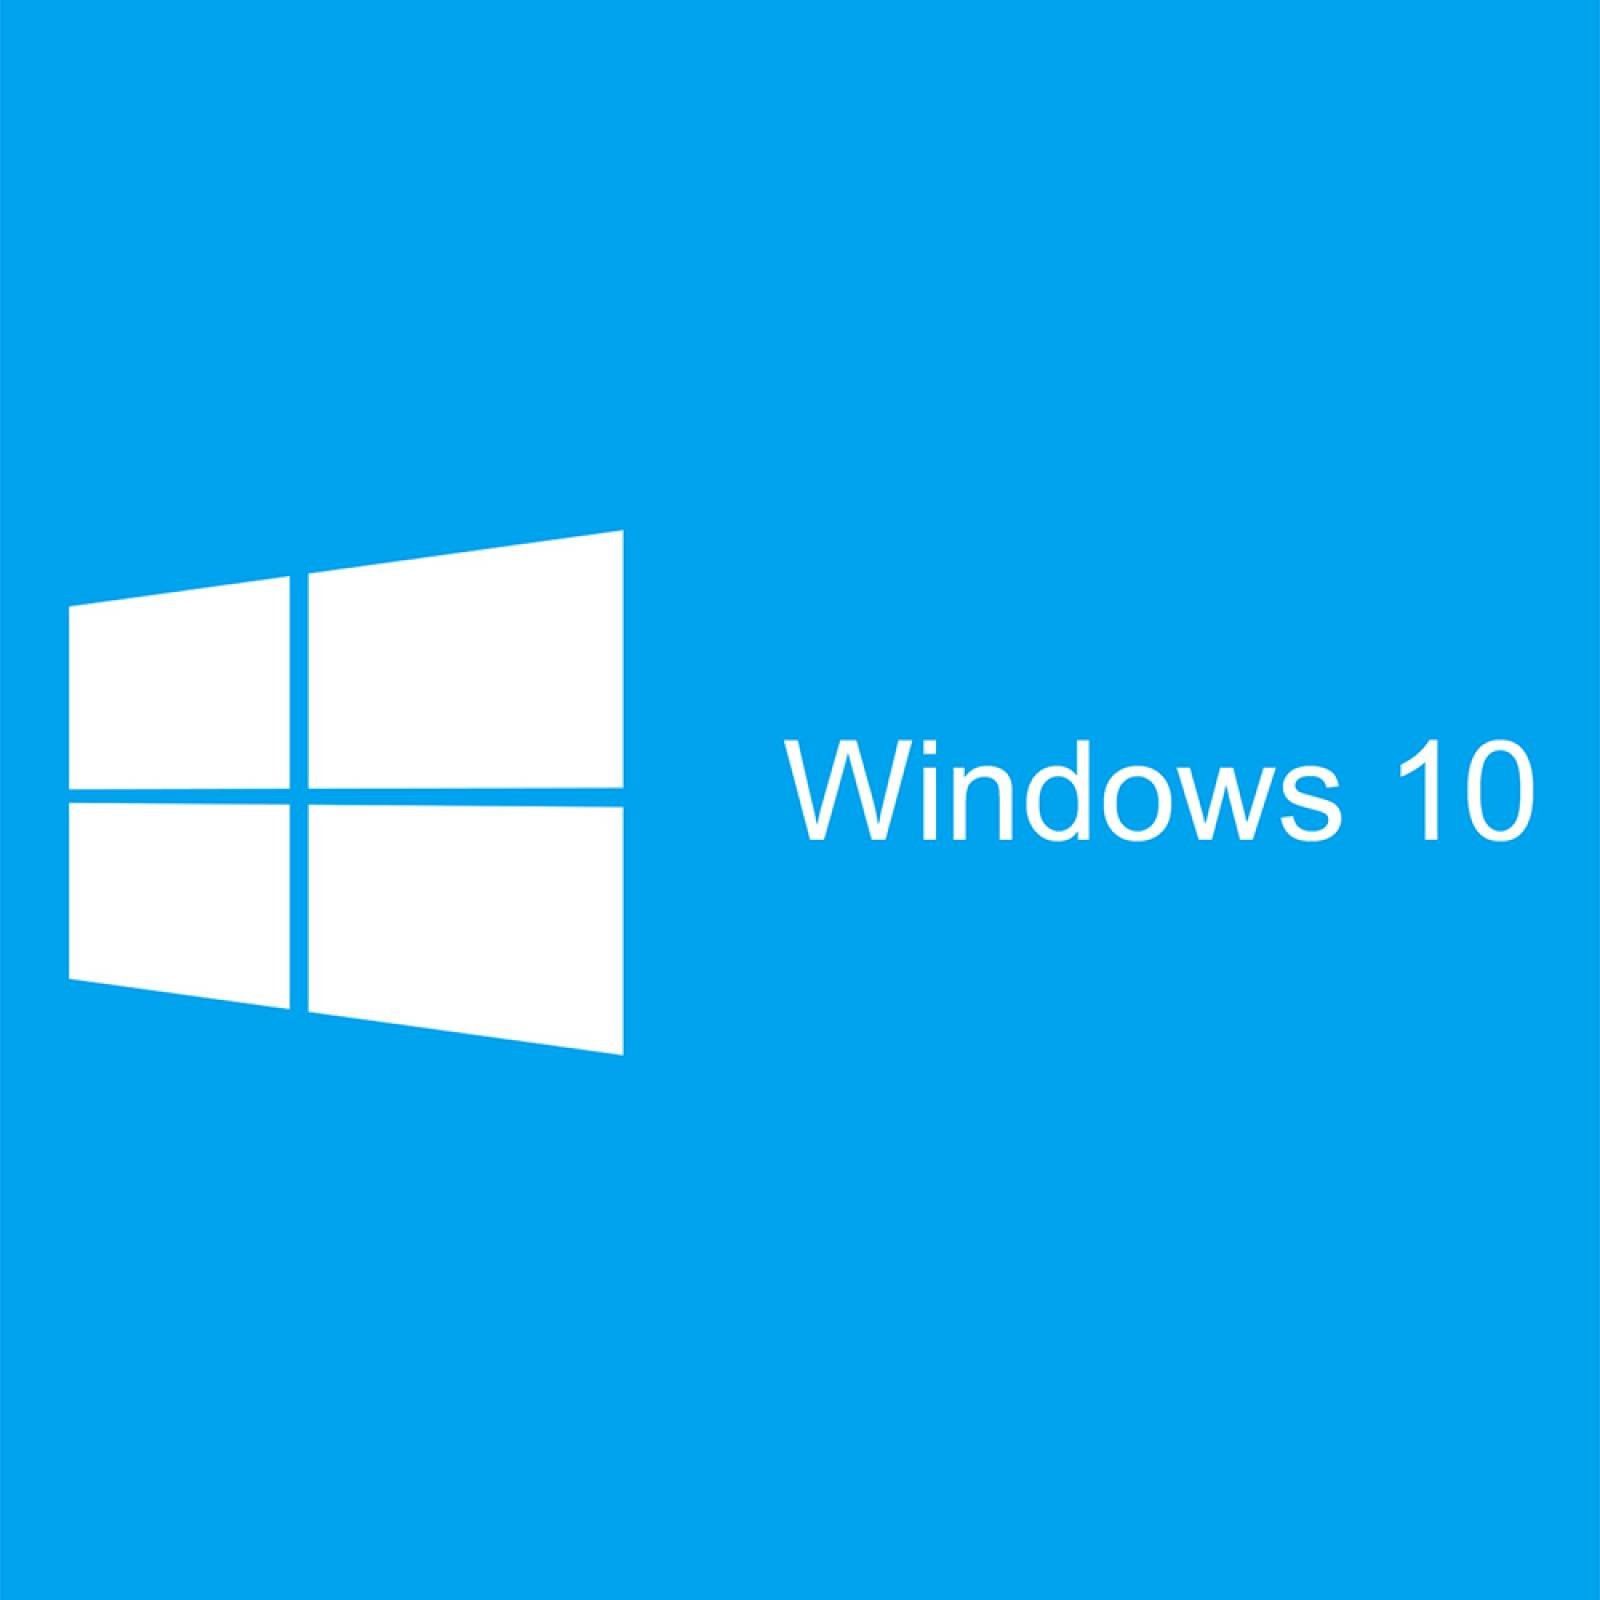 Microsoft Windows 10 Home (64 Bits) en Español, DVD OEM. Exclusivo a la venta en equipos nuevos.